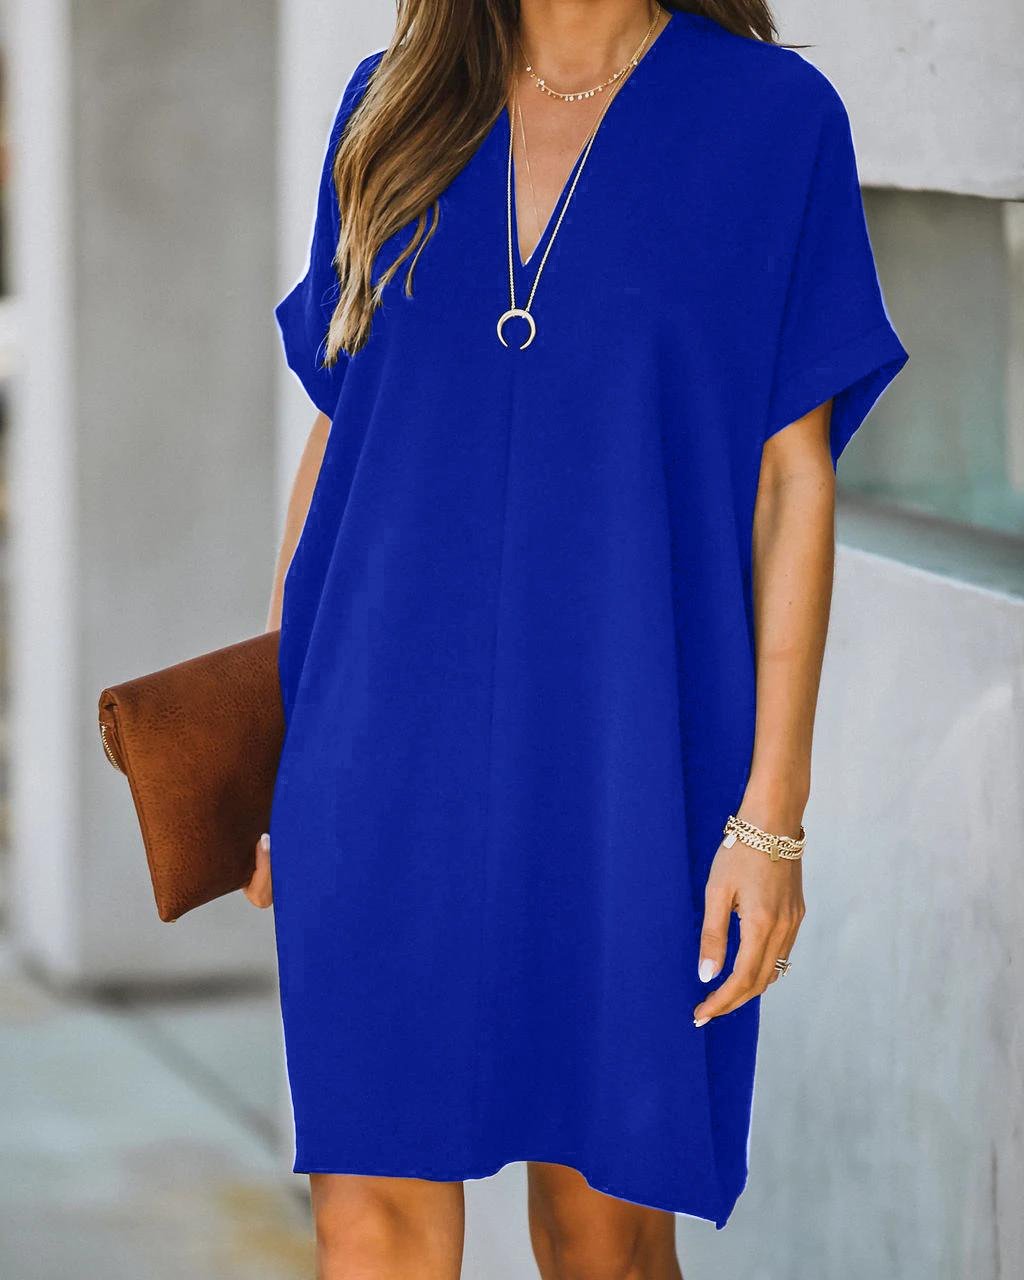 Women's V-neck short-sleeved solid color loose dresses women